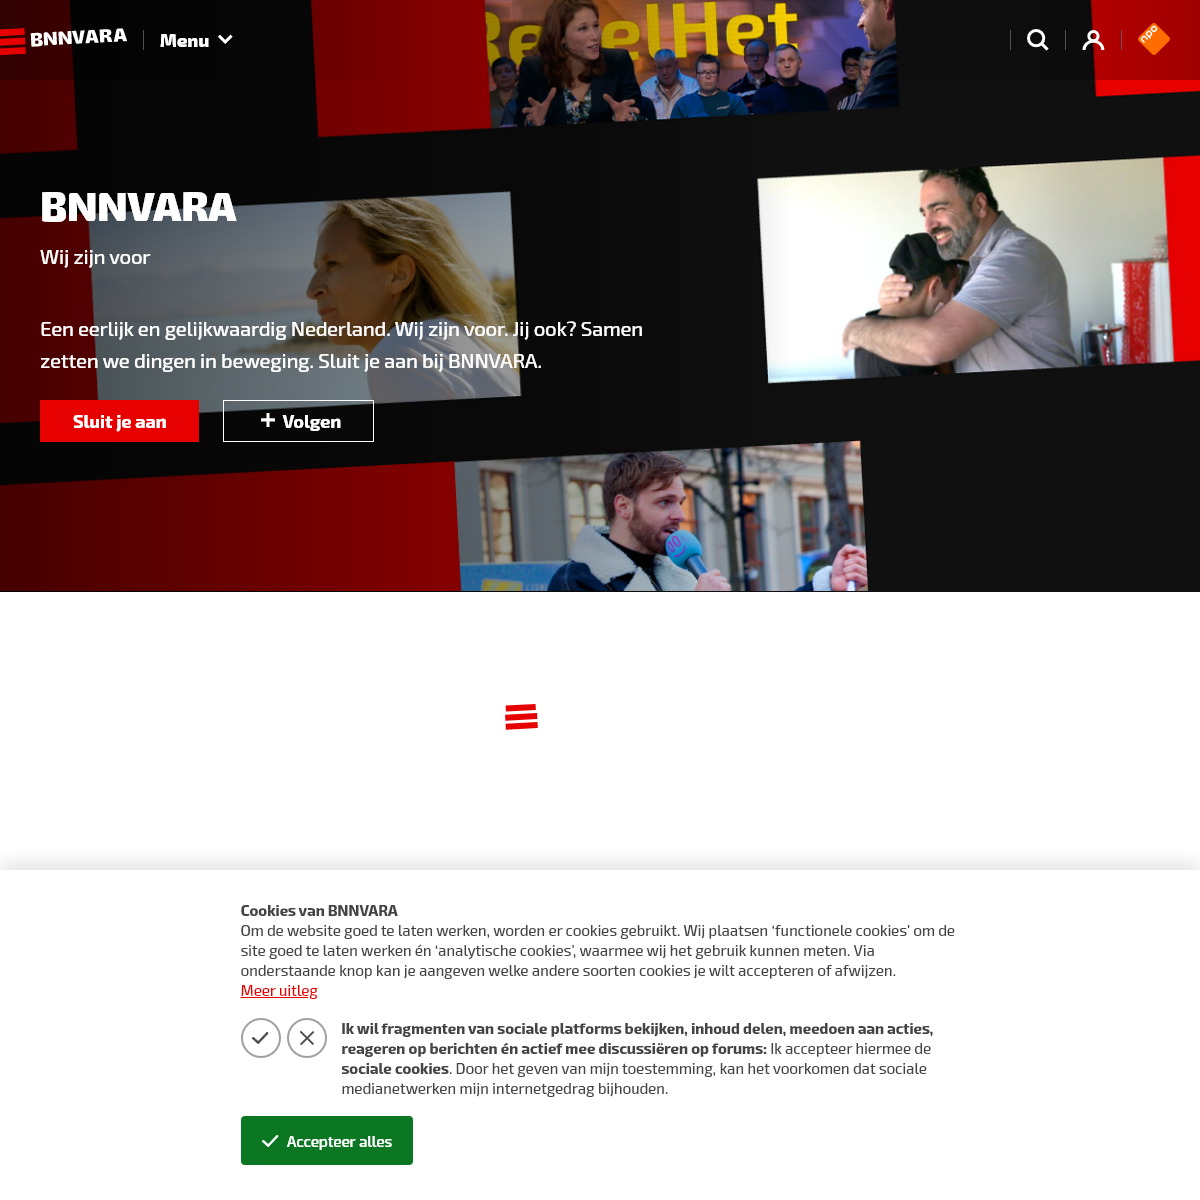 A complete backup of bnnvara.nl